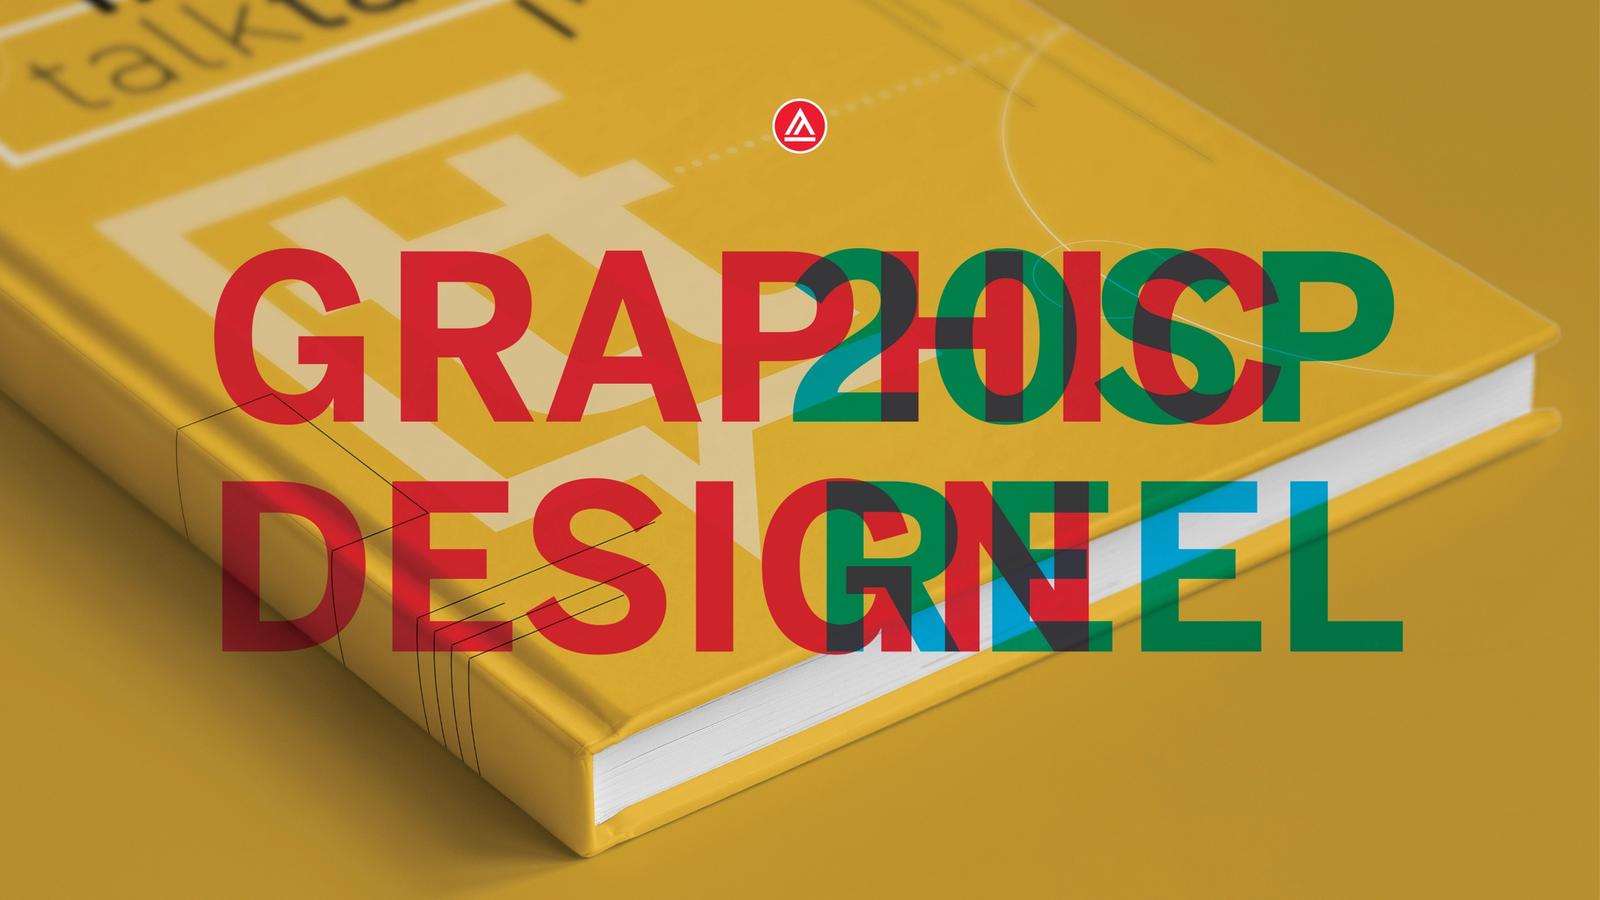 School of Graphic Design reel